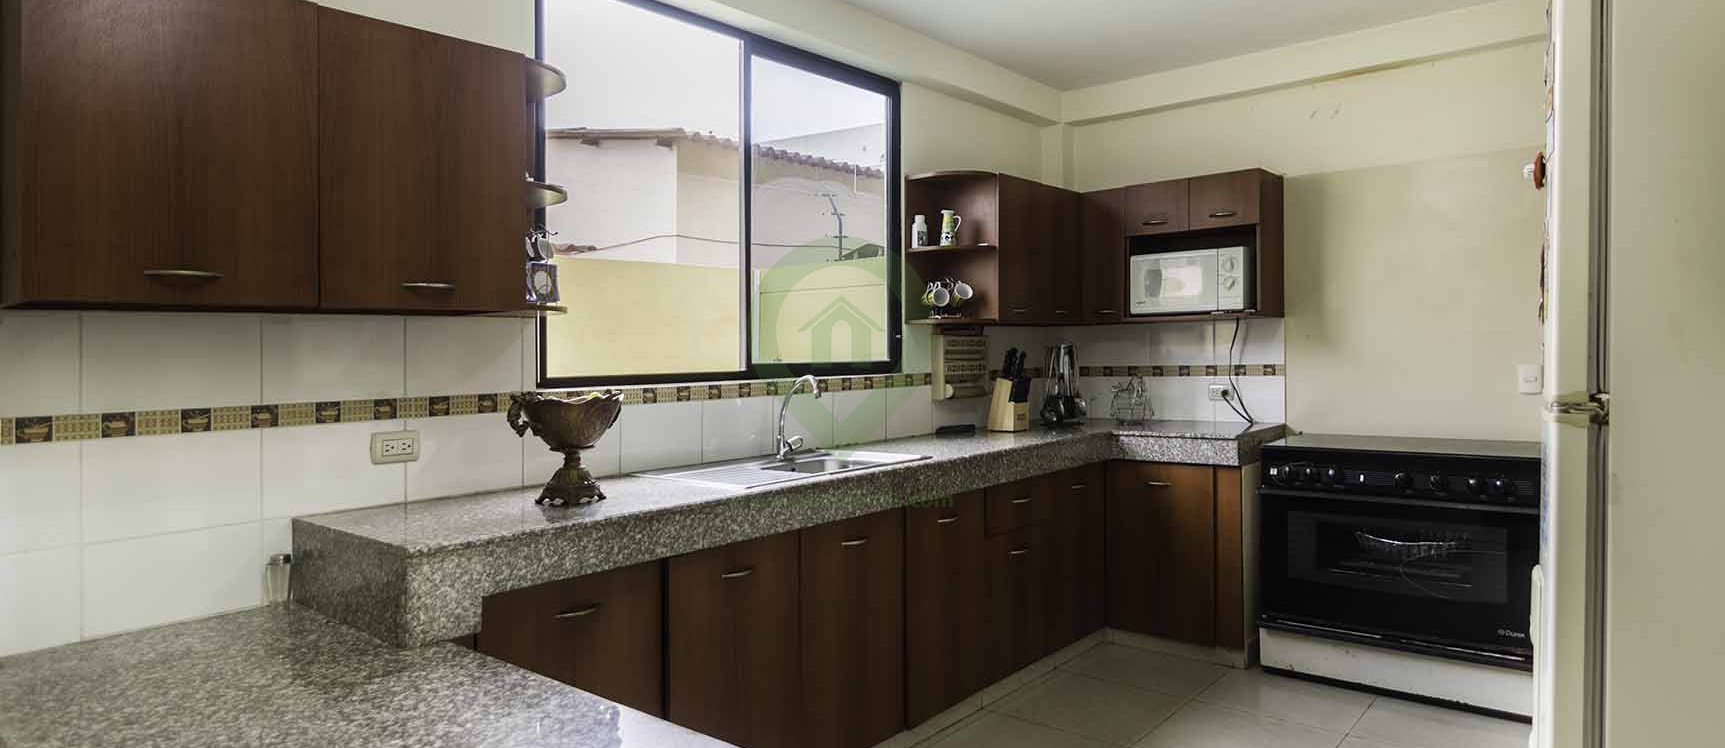 GeoBienes - Casa en venta en Urbanización Milann vía a Samborondón - Plusvalia Guayaquil Casas de venta y alquiler Inmobiliaria Ecuador